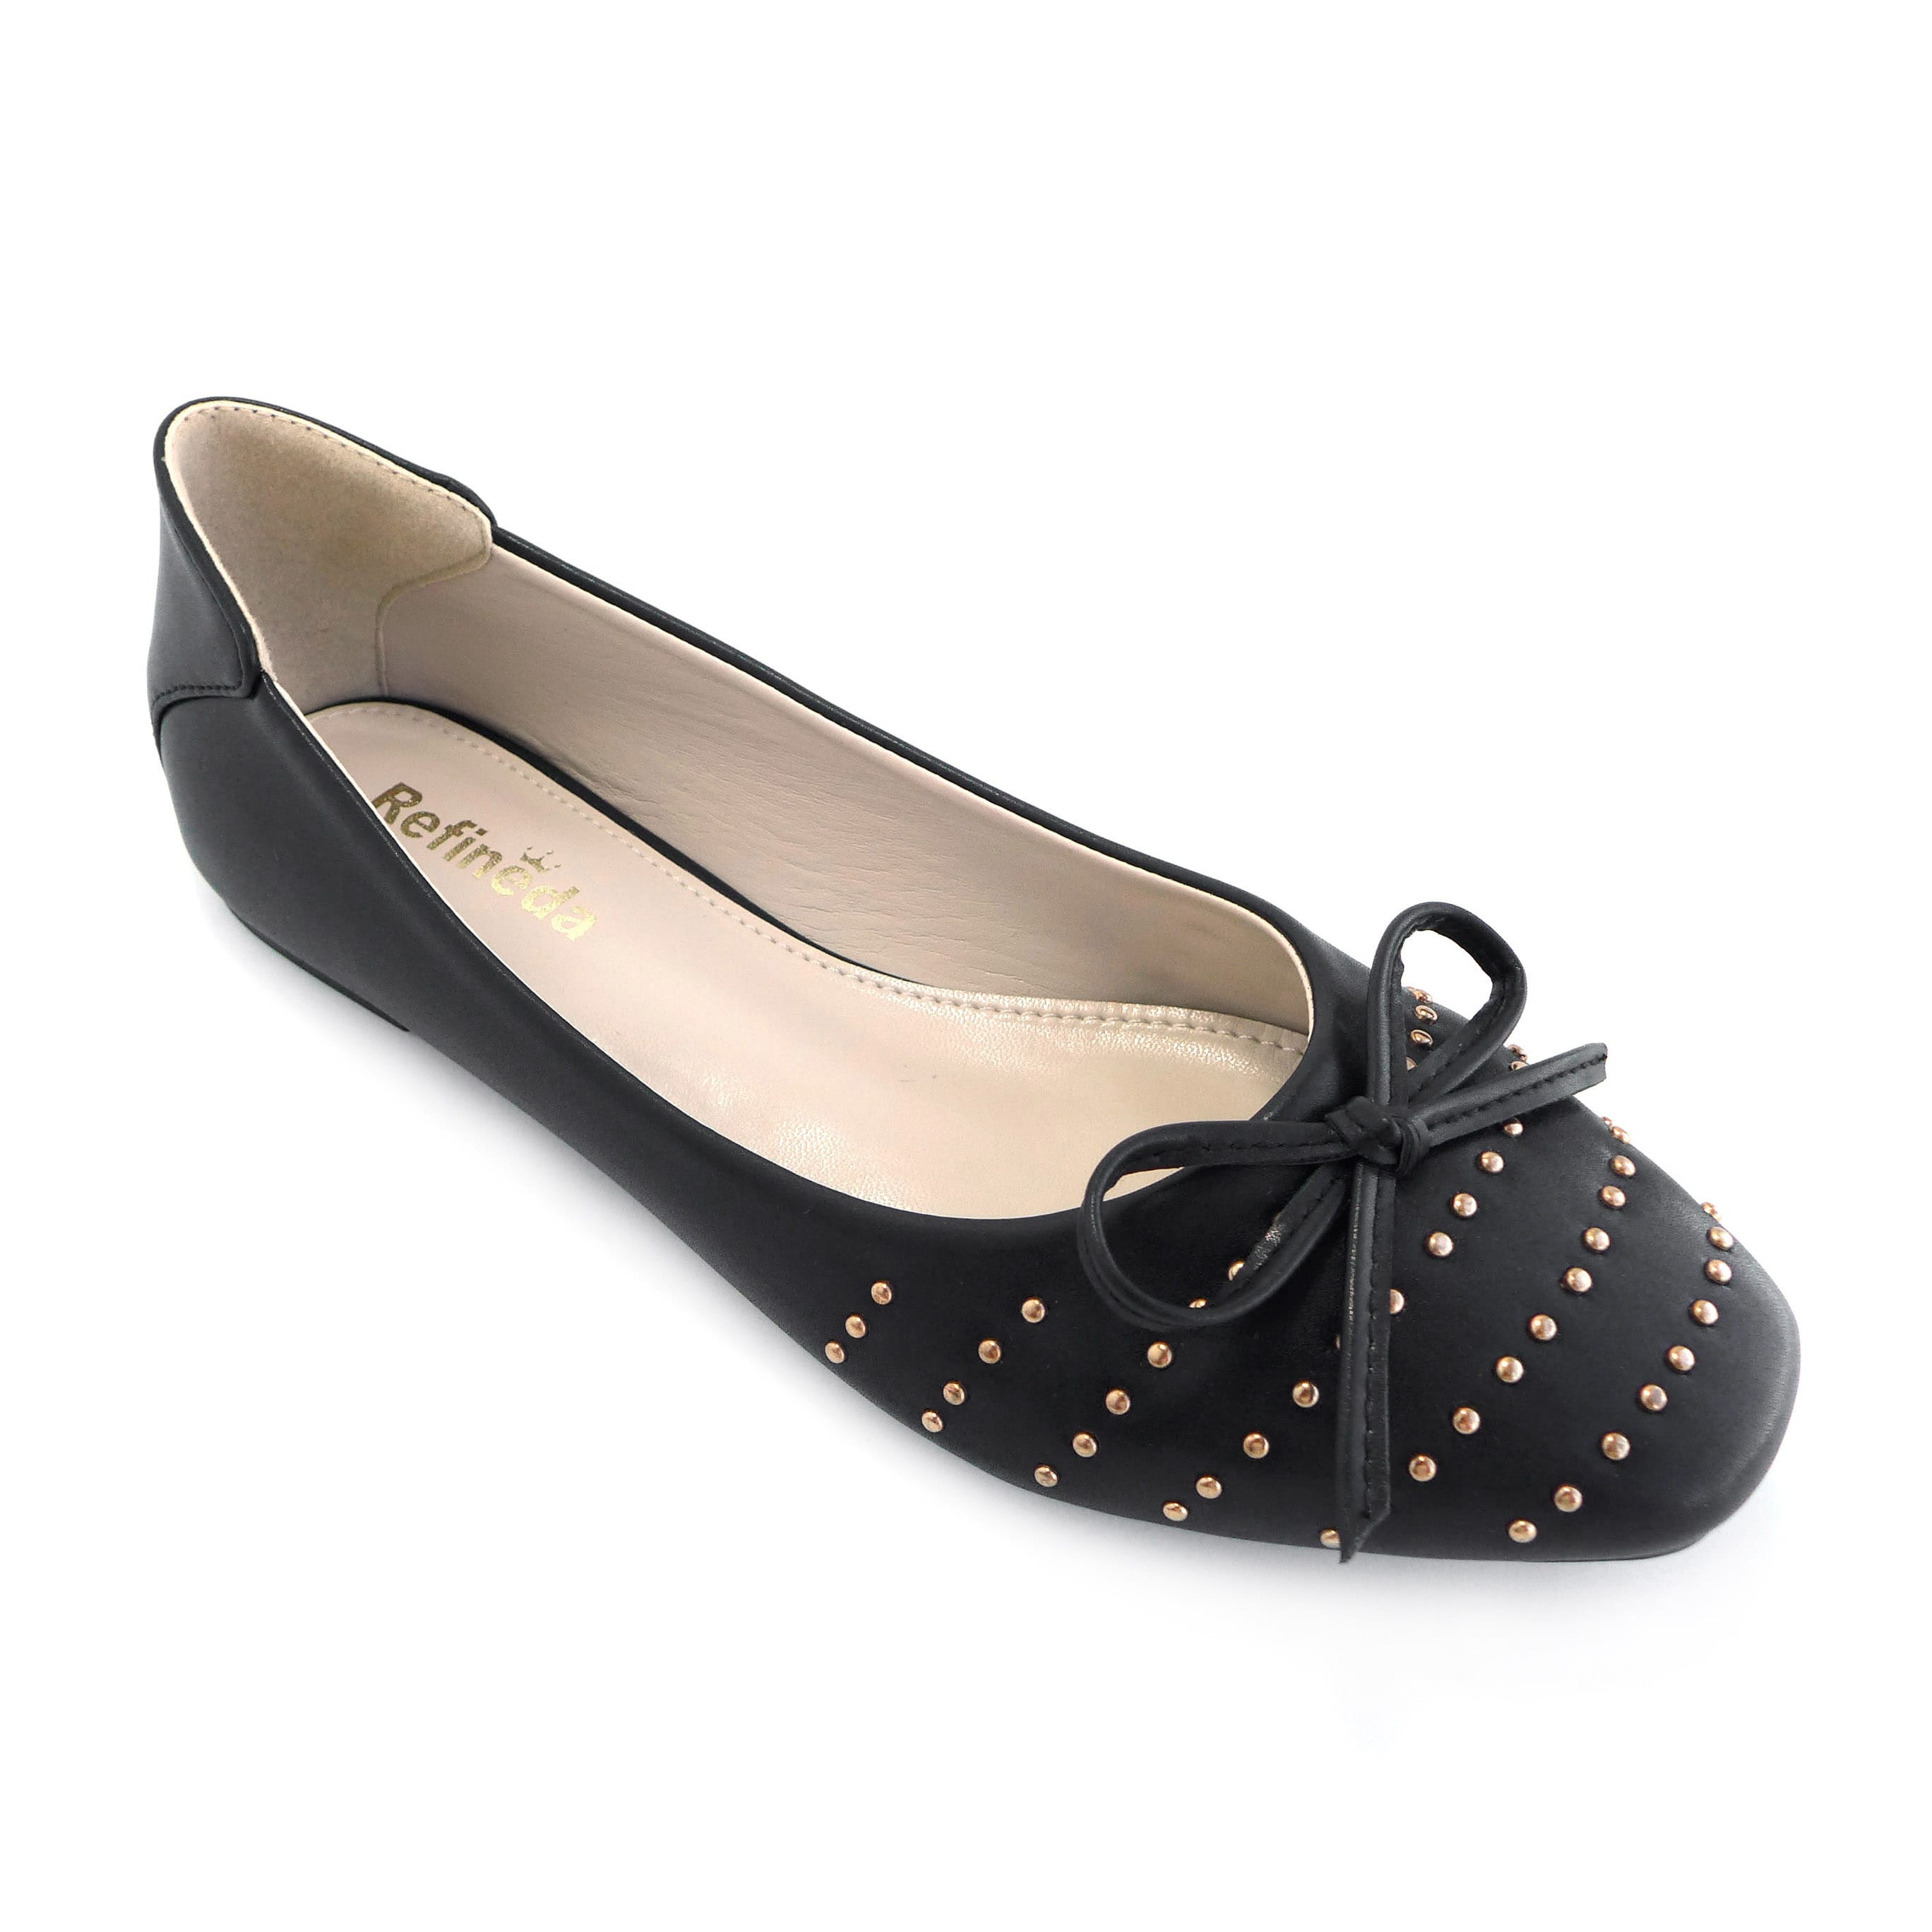 Refineda Women's sole-Simple Ballerina Walking Flats Shoes